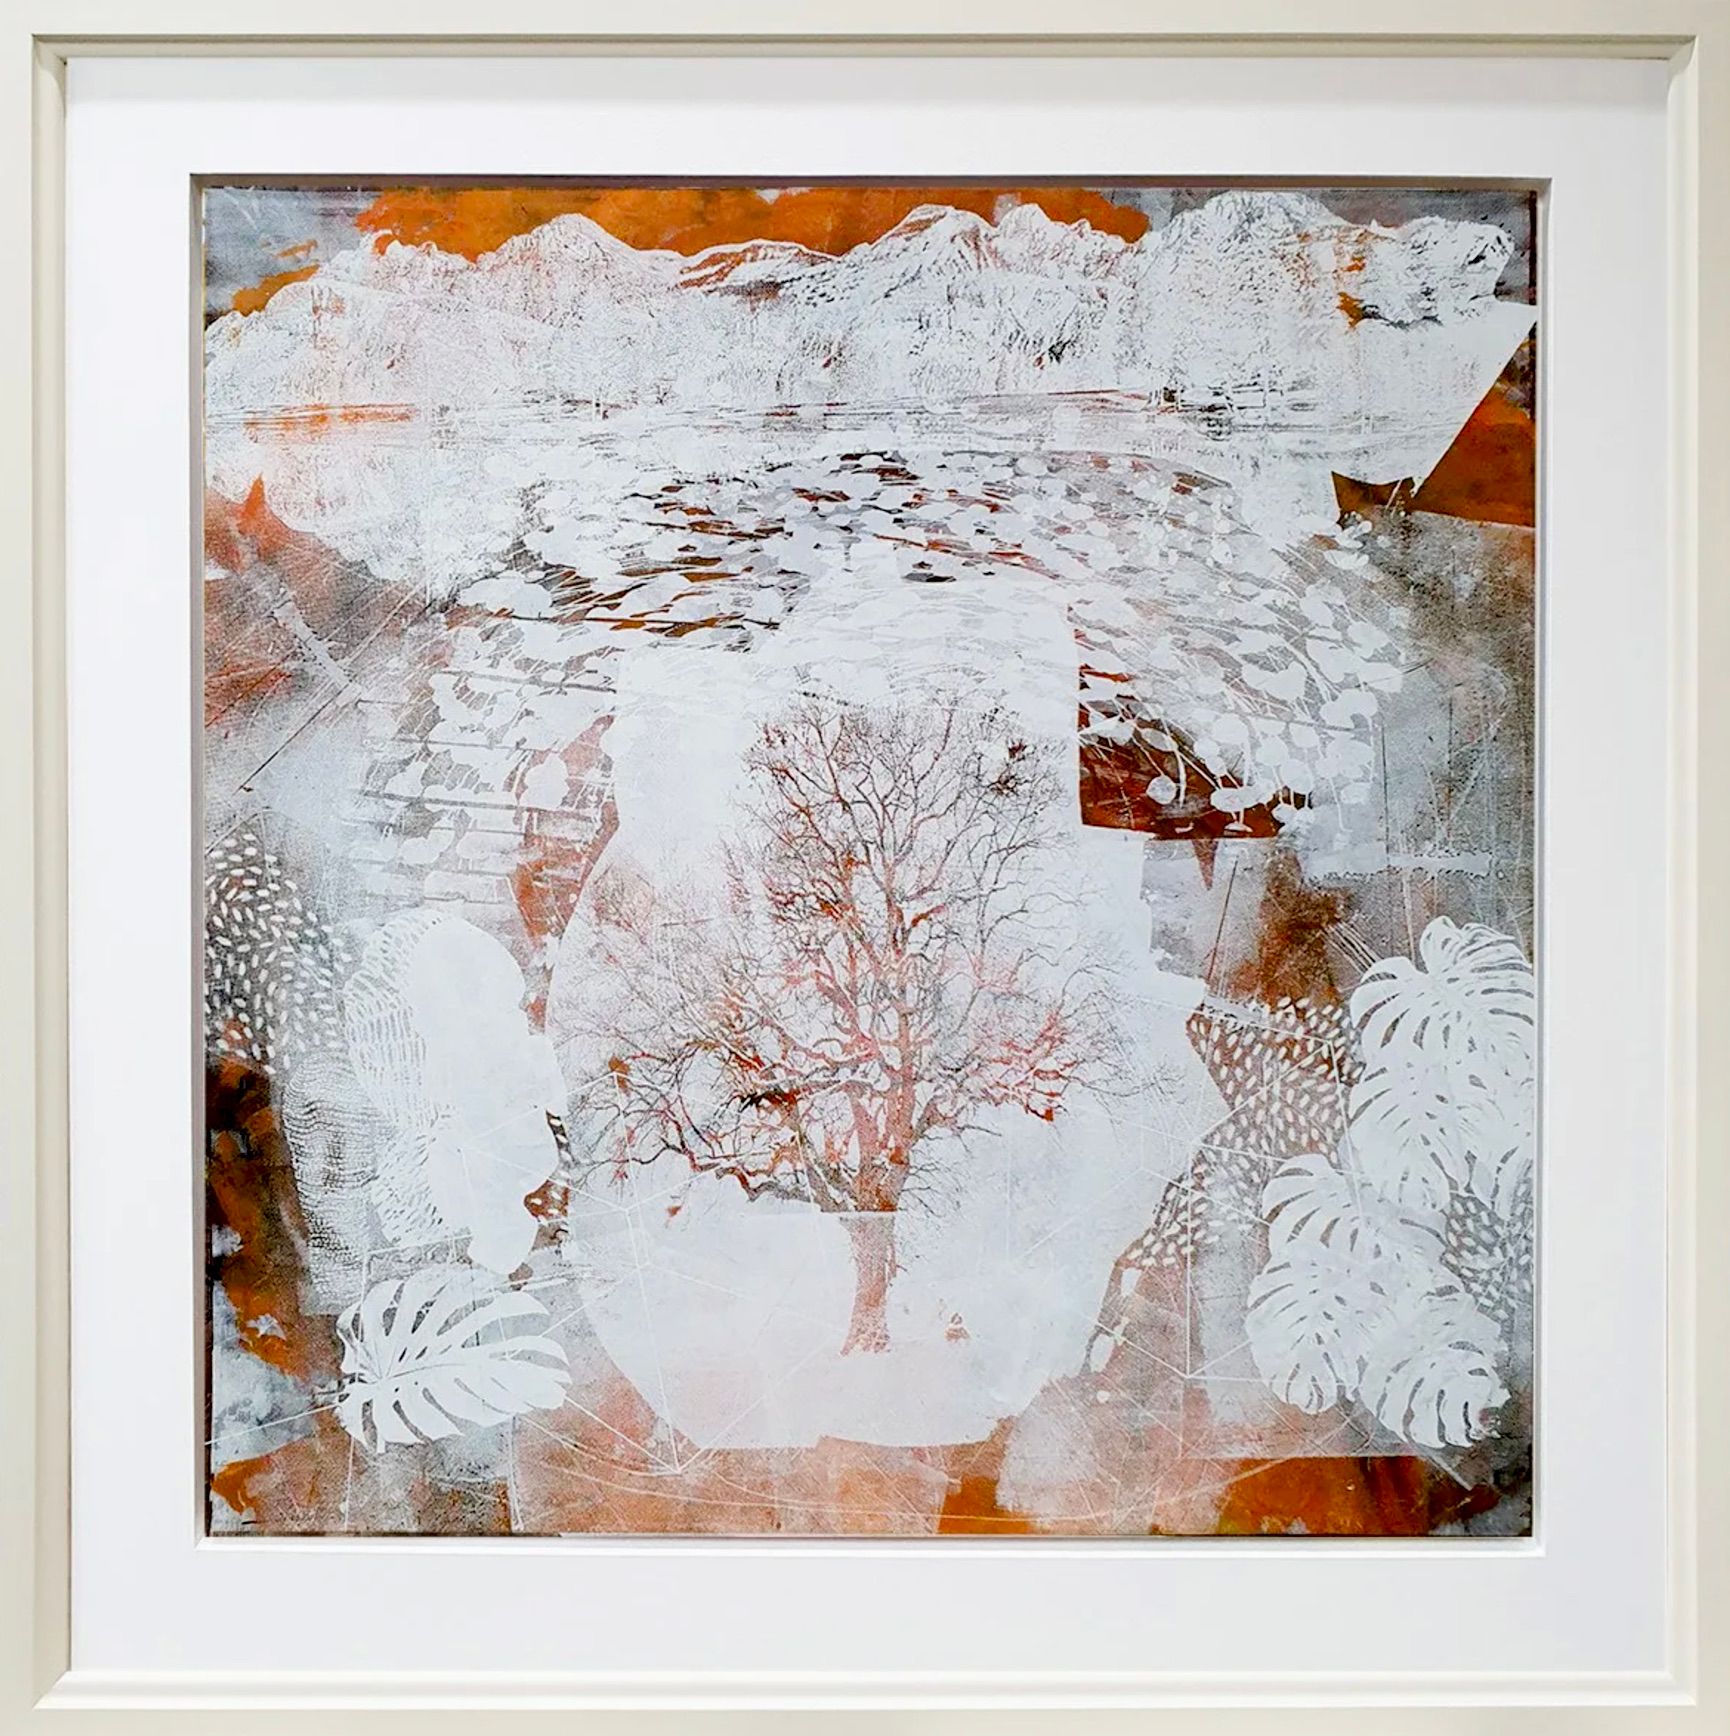 Dieter Nusbaum abstrakte Malerei Siebdruck Baum ohne Blätter und Palmblätter mit Natur Formen